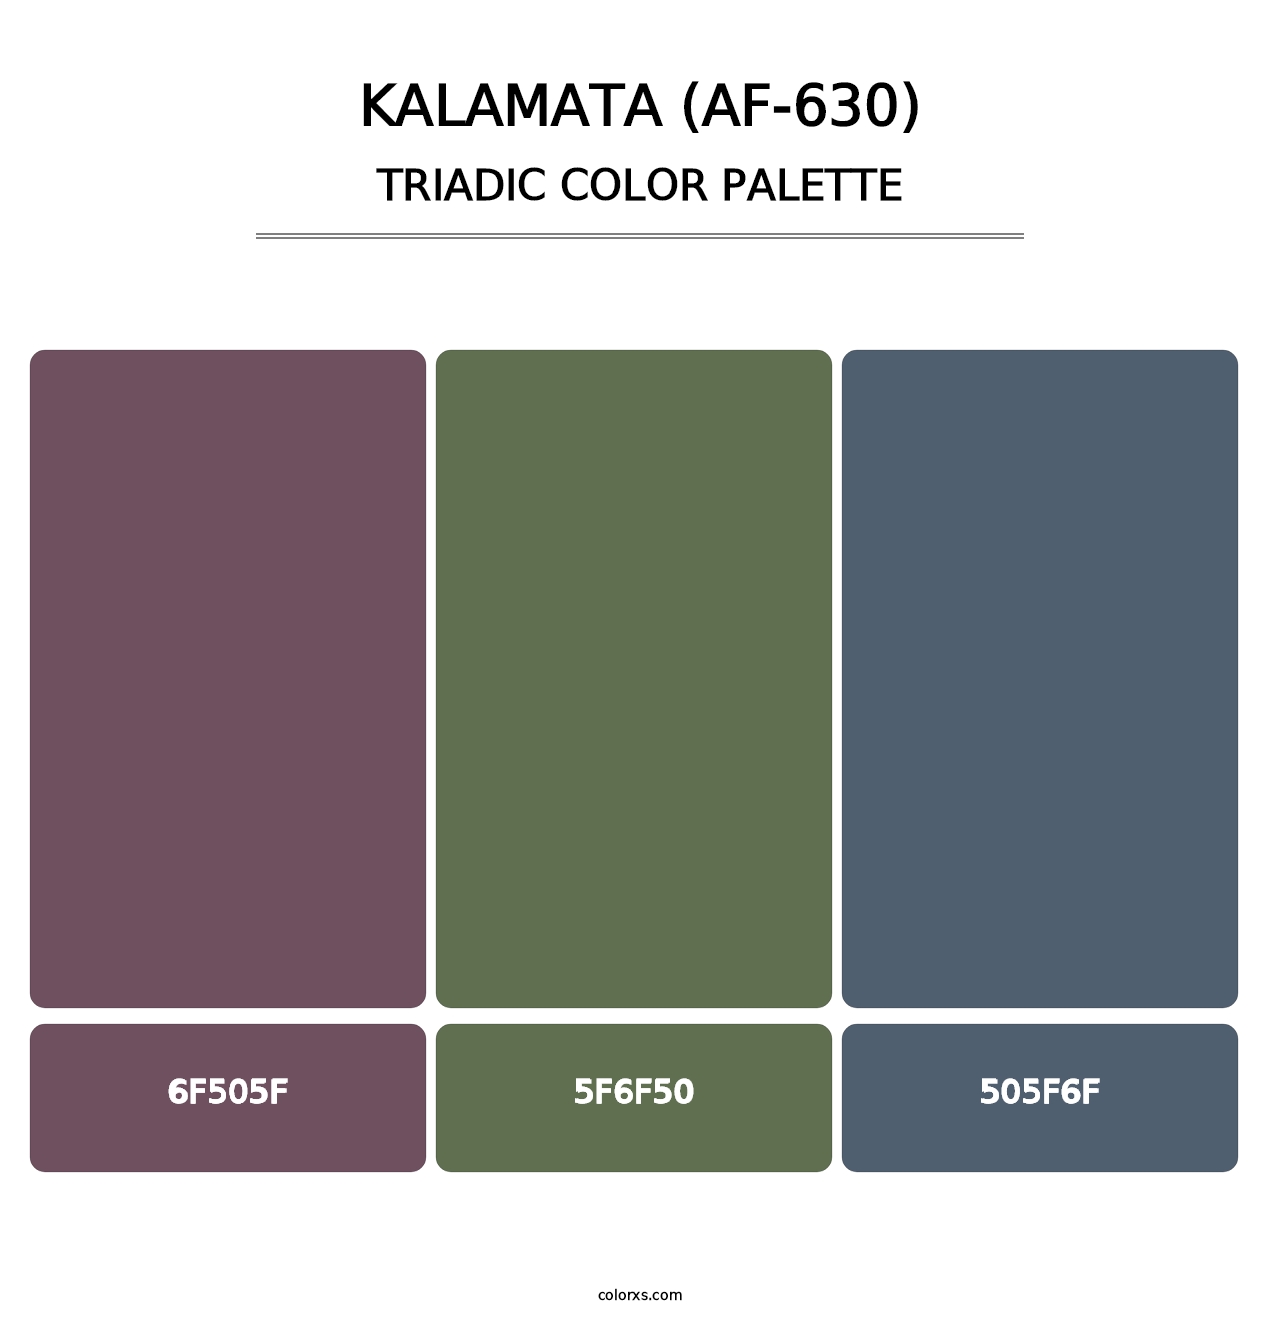 Kalamata (AF-630) - Triadic Color Palette